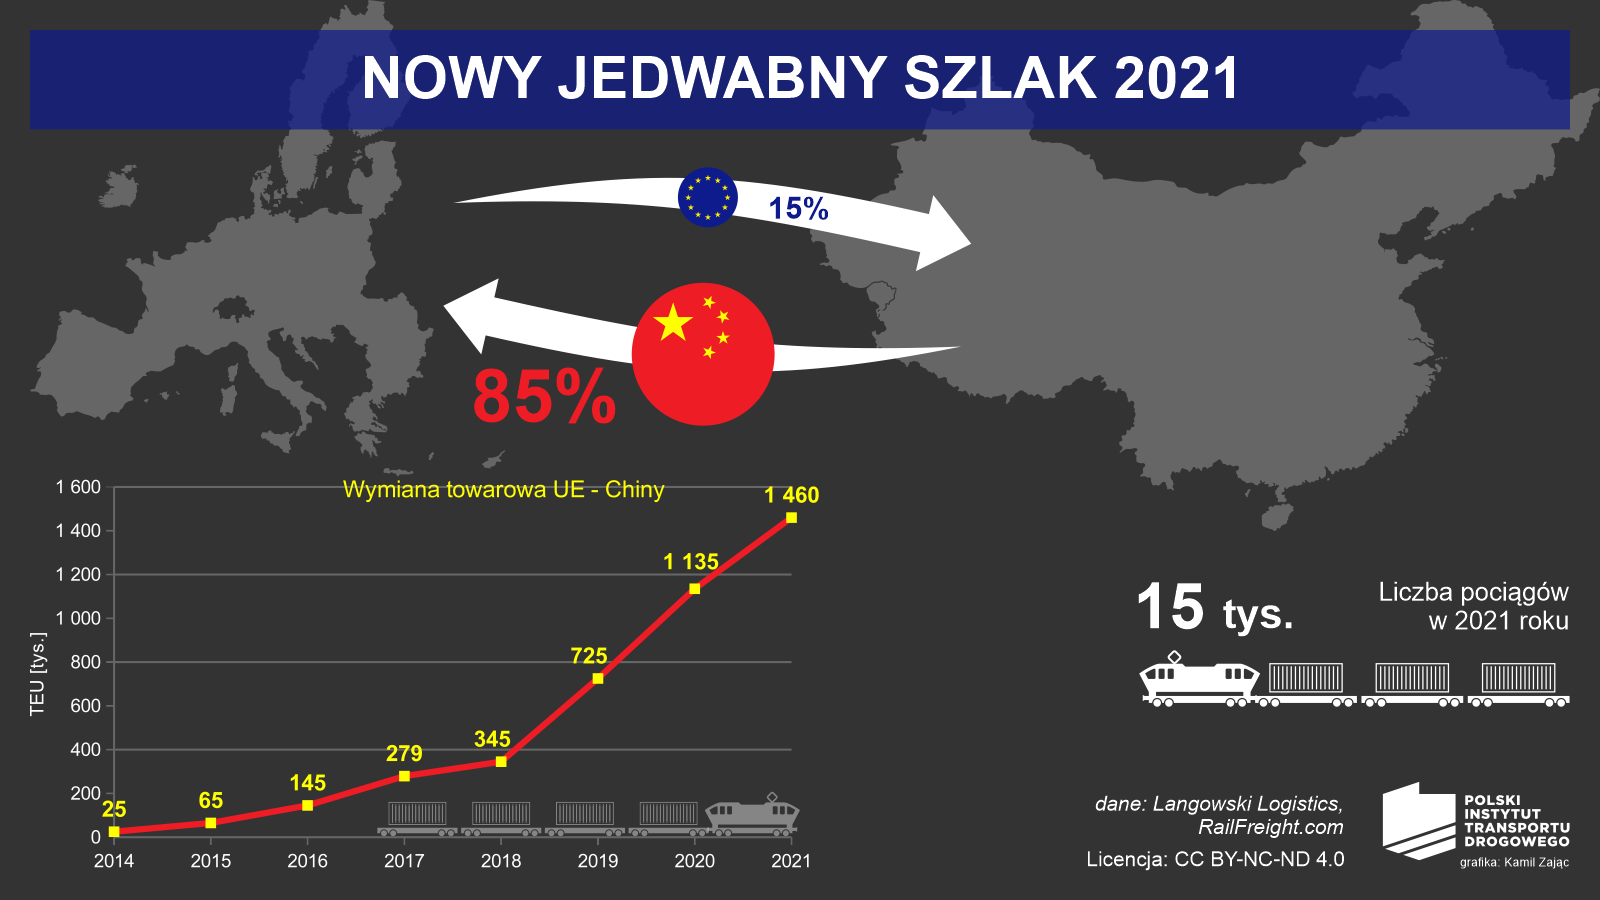 Wykres i infografika prezentująca Nowy Jedwabny Szlak w liczbach, wraz ze wzrostem wymiany towarowej w latach 2014-2021